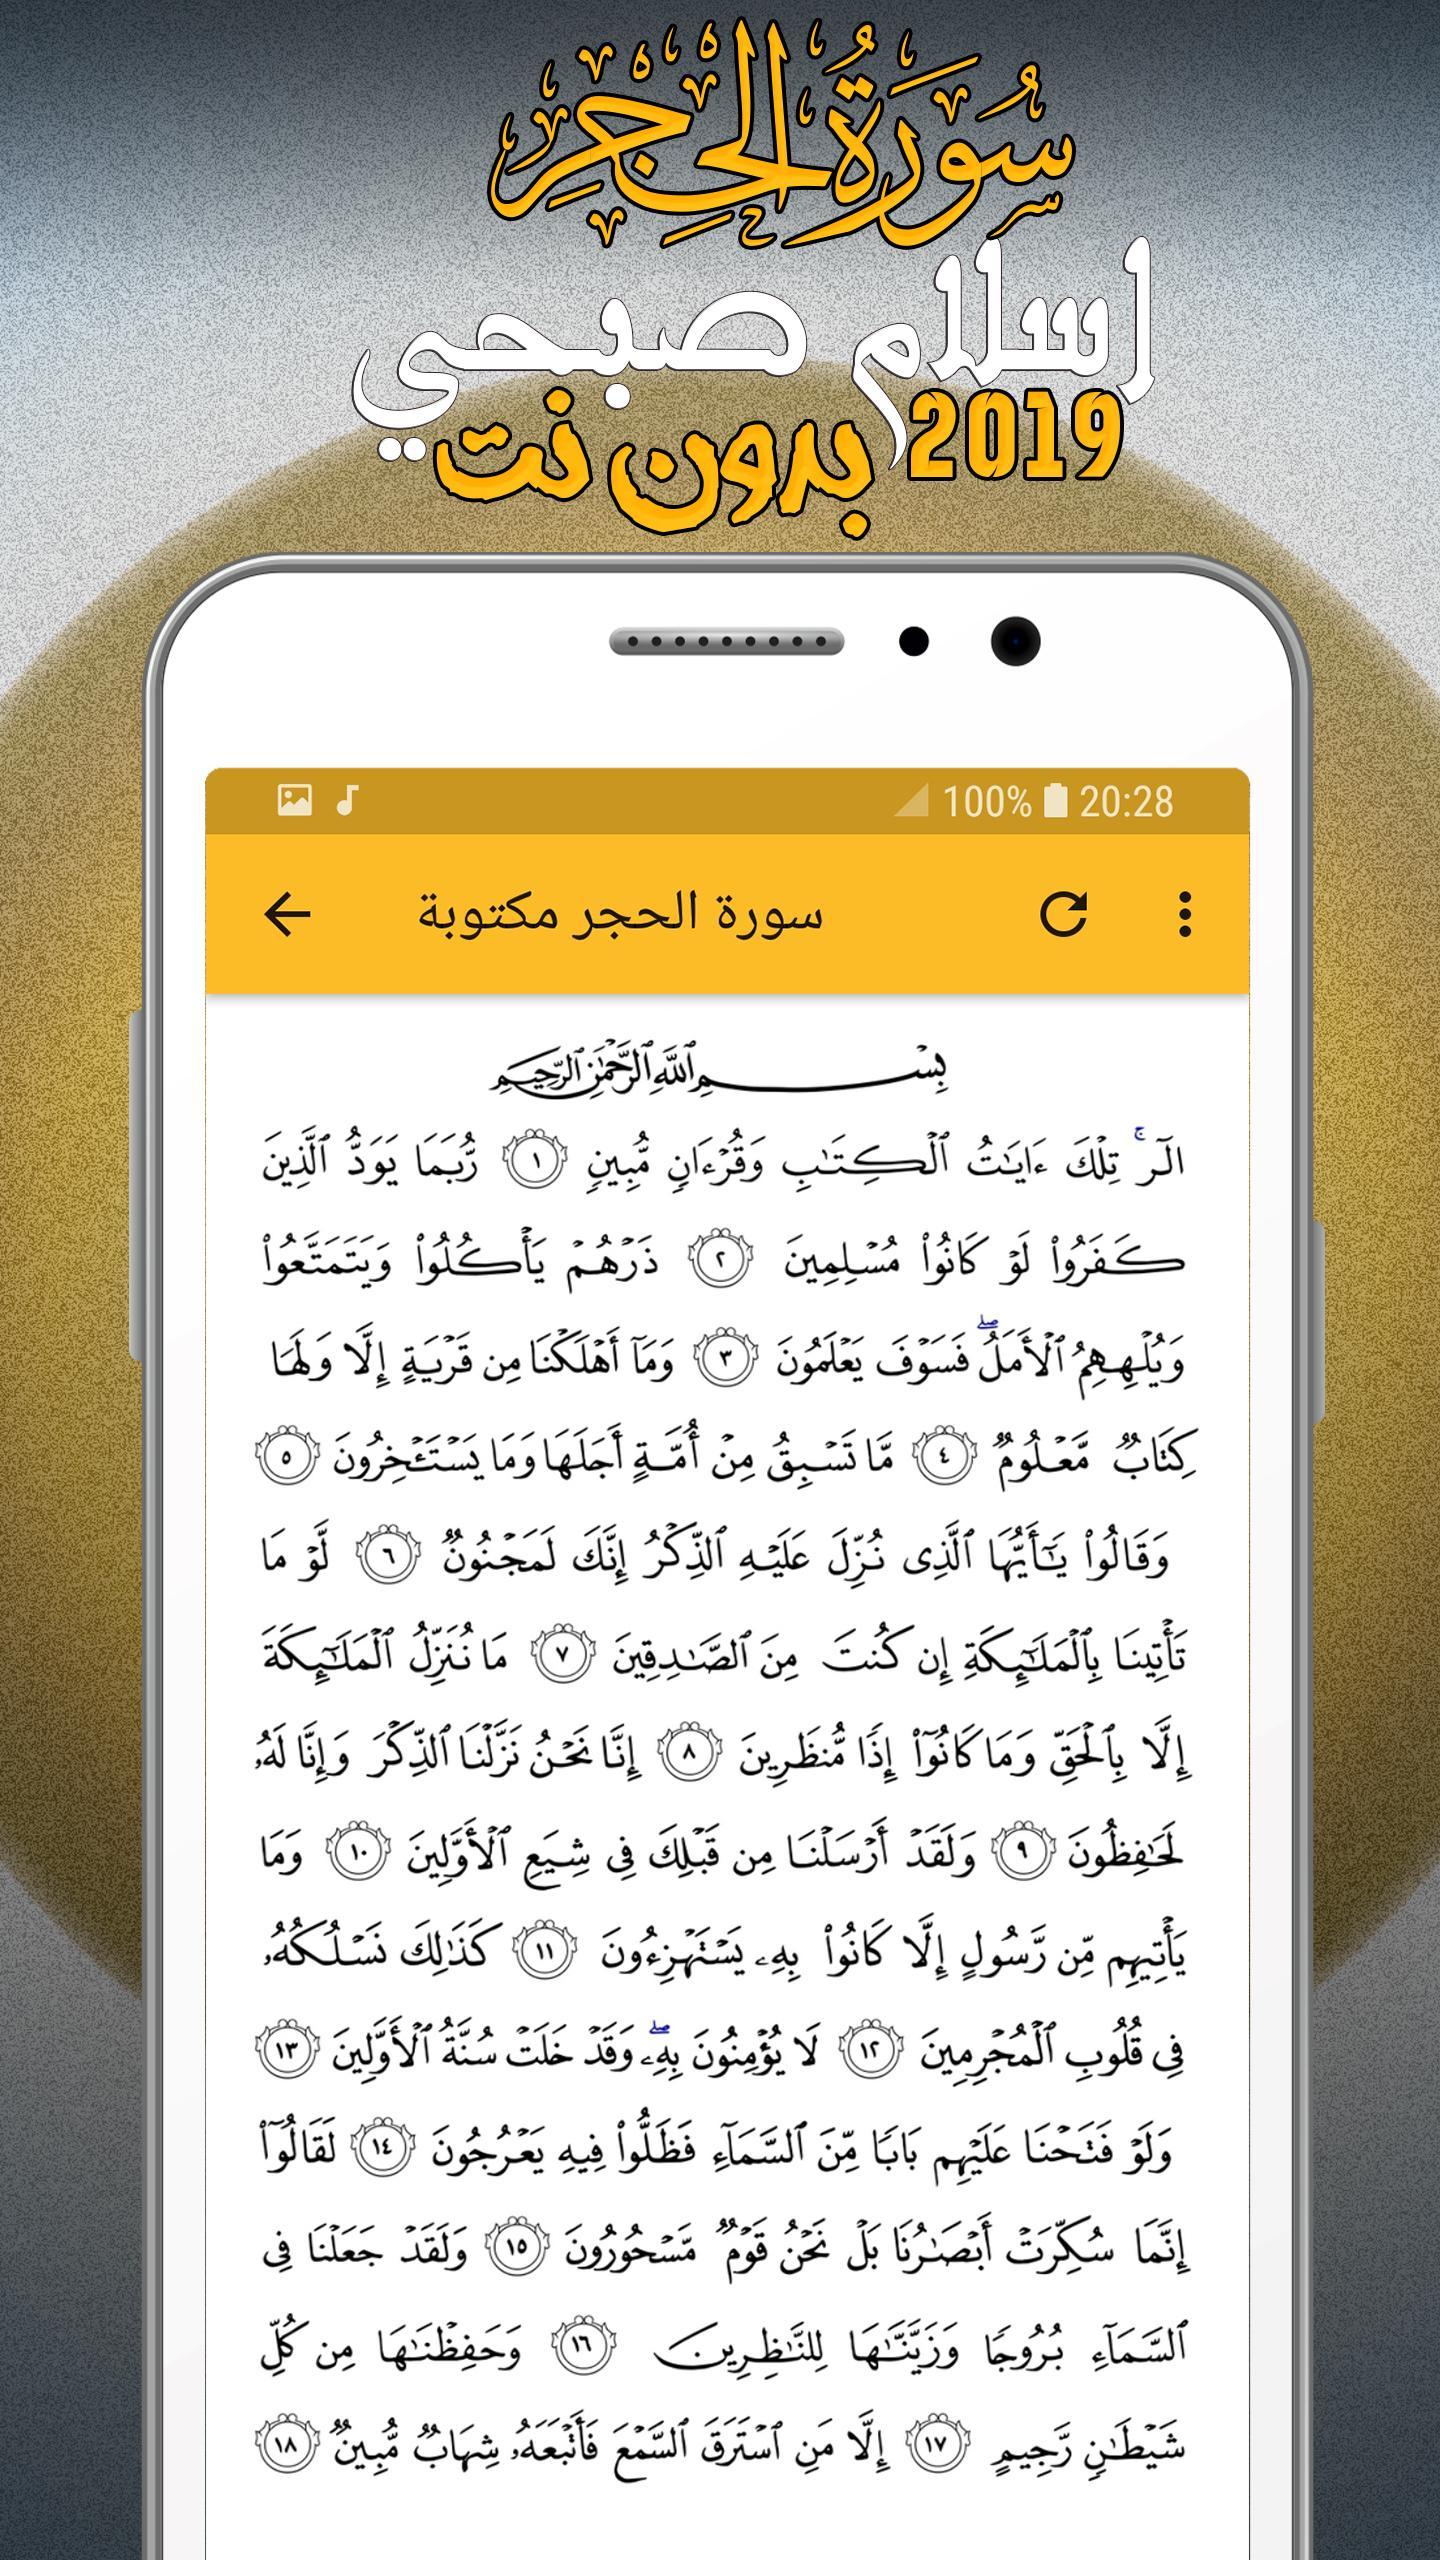 سورة الحجر كاملة اسلام صبحي for Android - APK Download